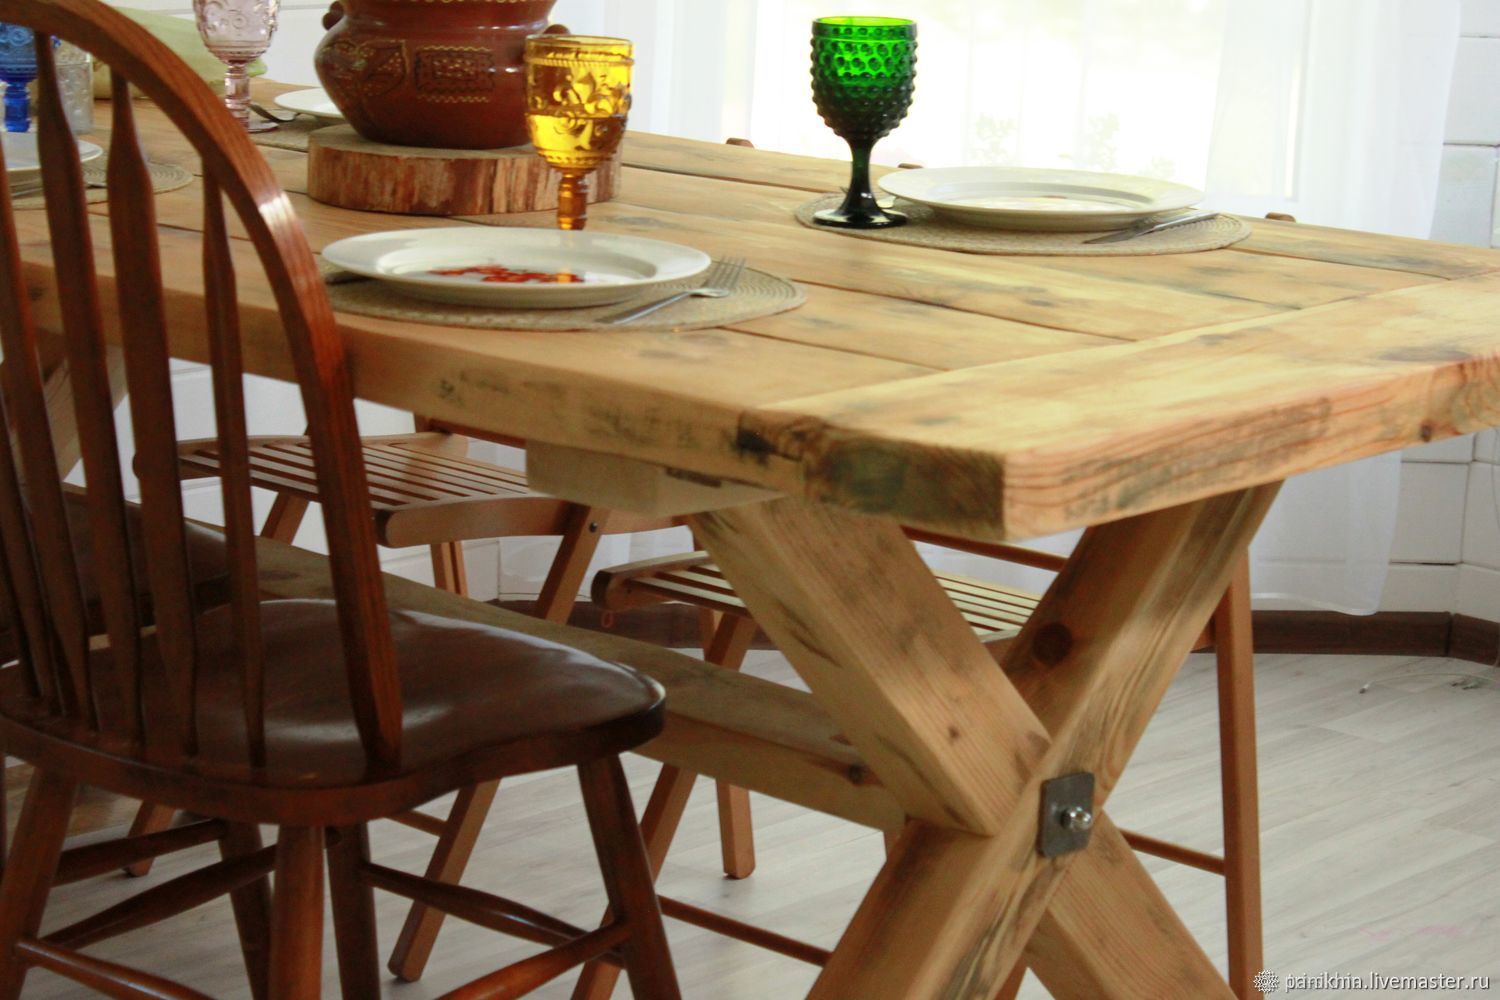 Деревянный кухонный стол со стульями